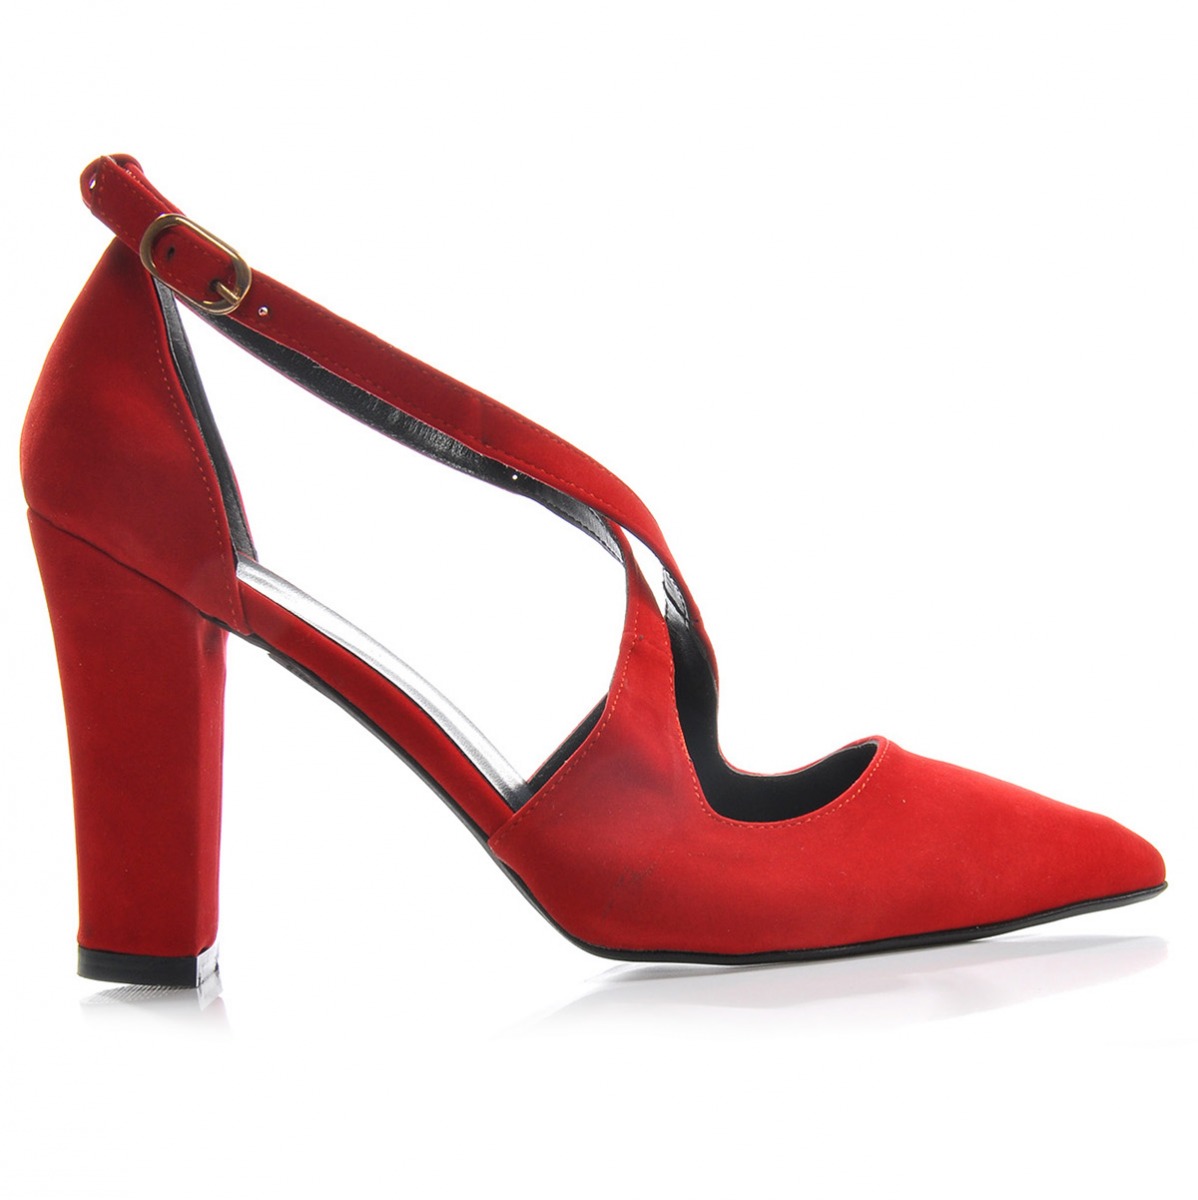 Flo Kadın  Kırmızı-Süet Klasik Topuklu Ayakkabı VZN-179Y. 3